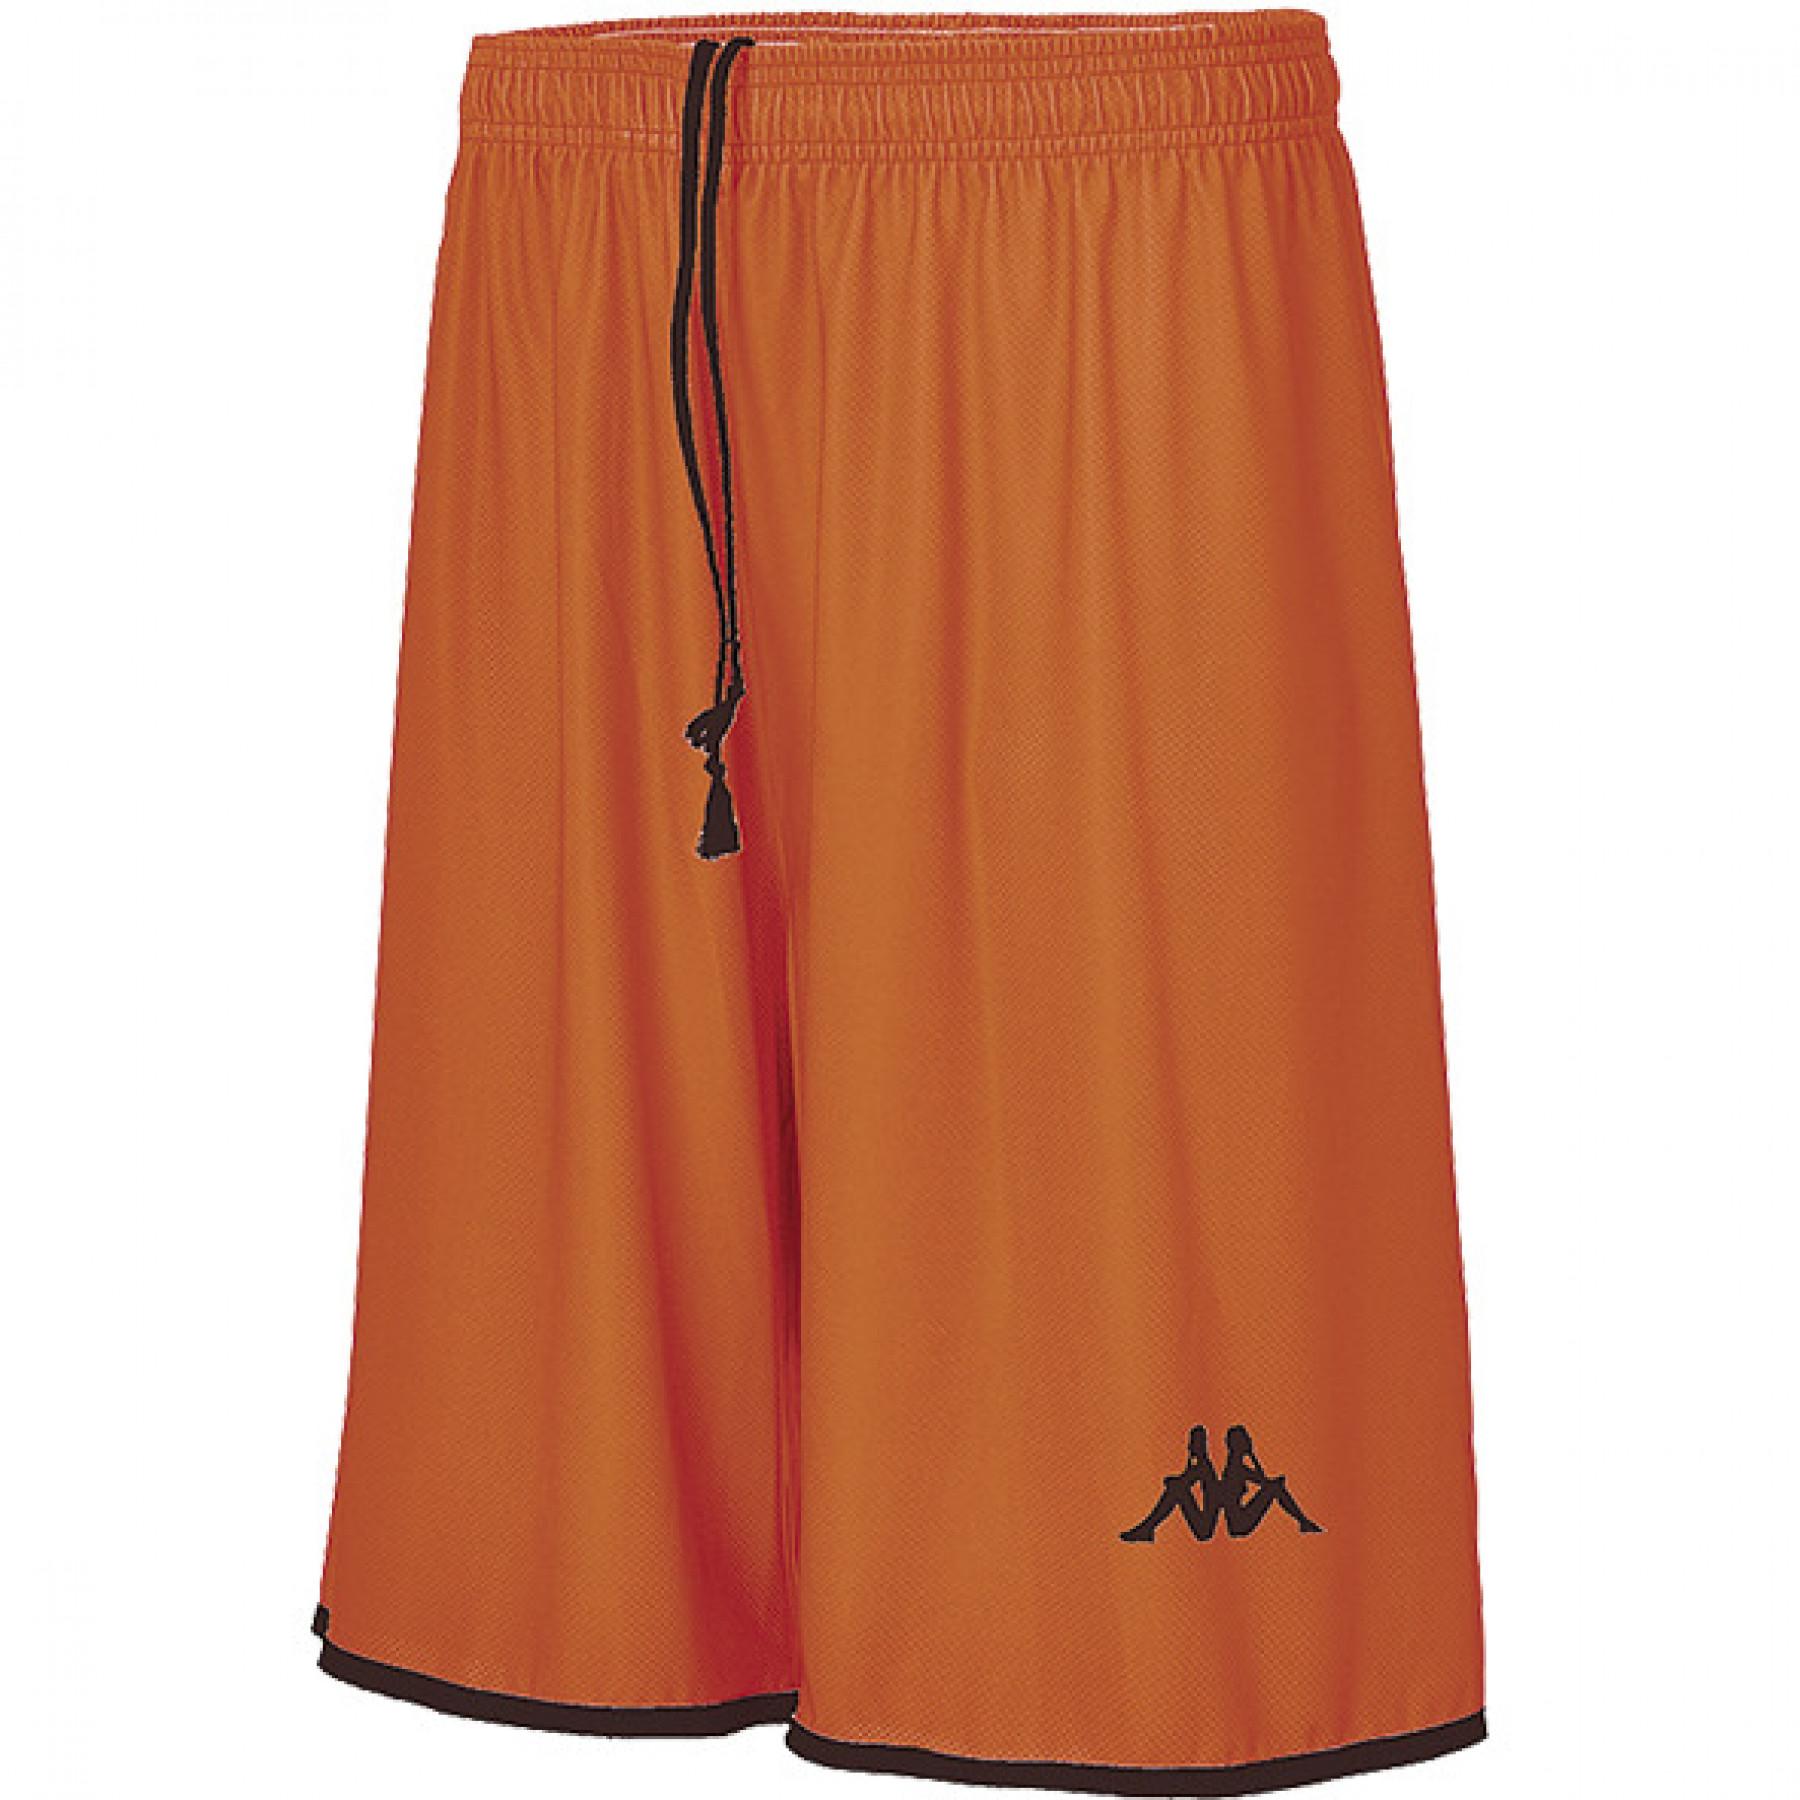 Pantalón corto de baloncesto Kappa Opi